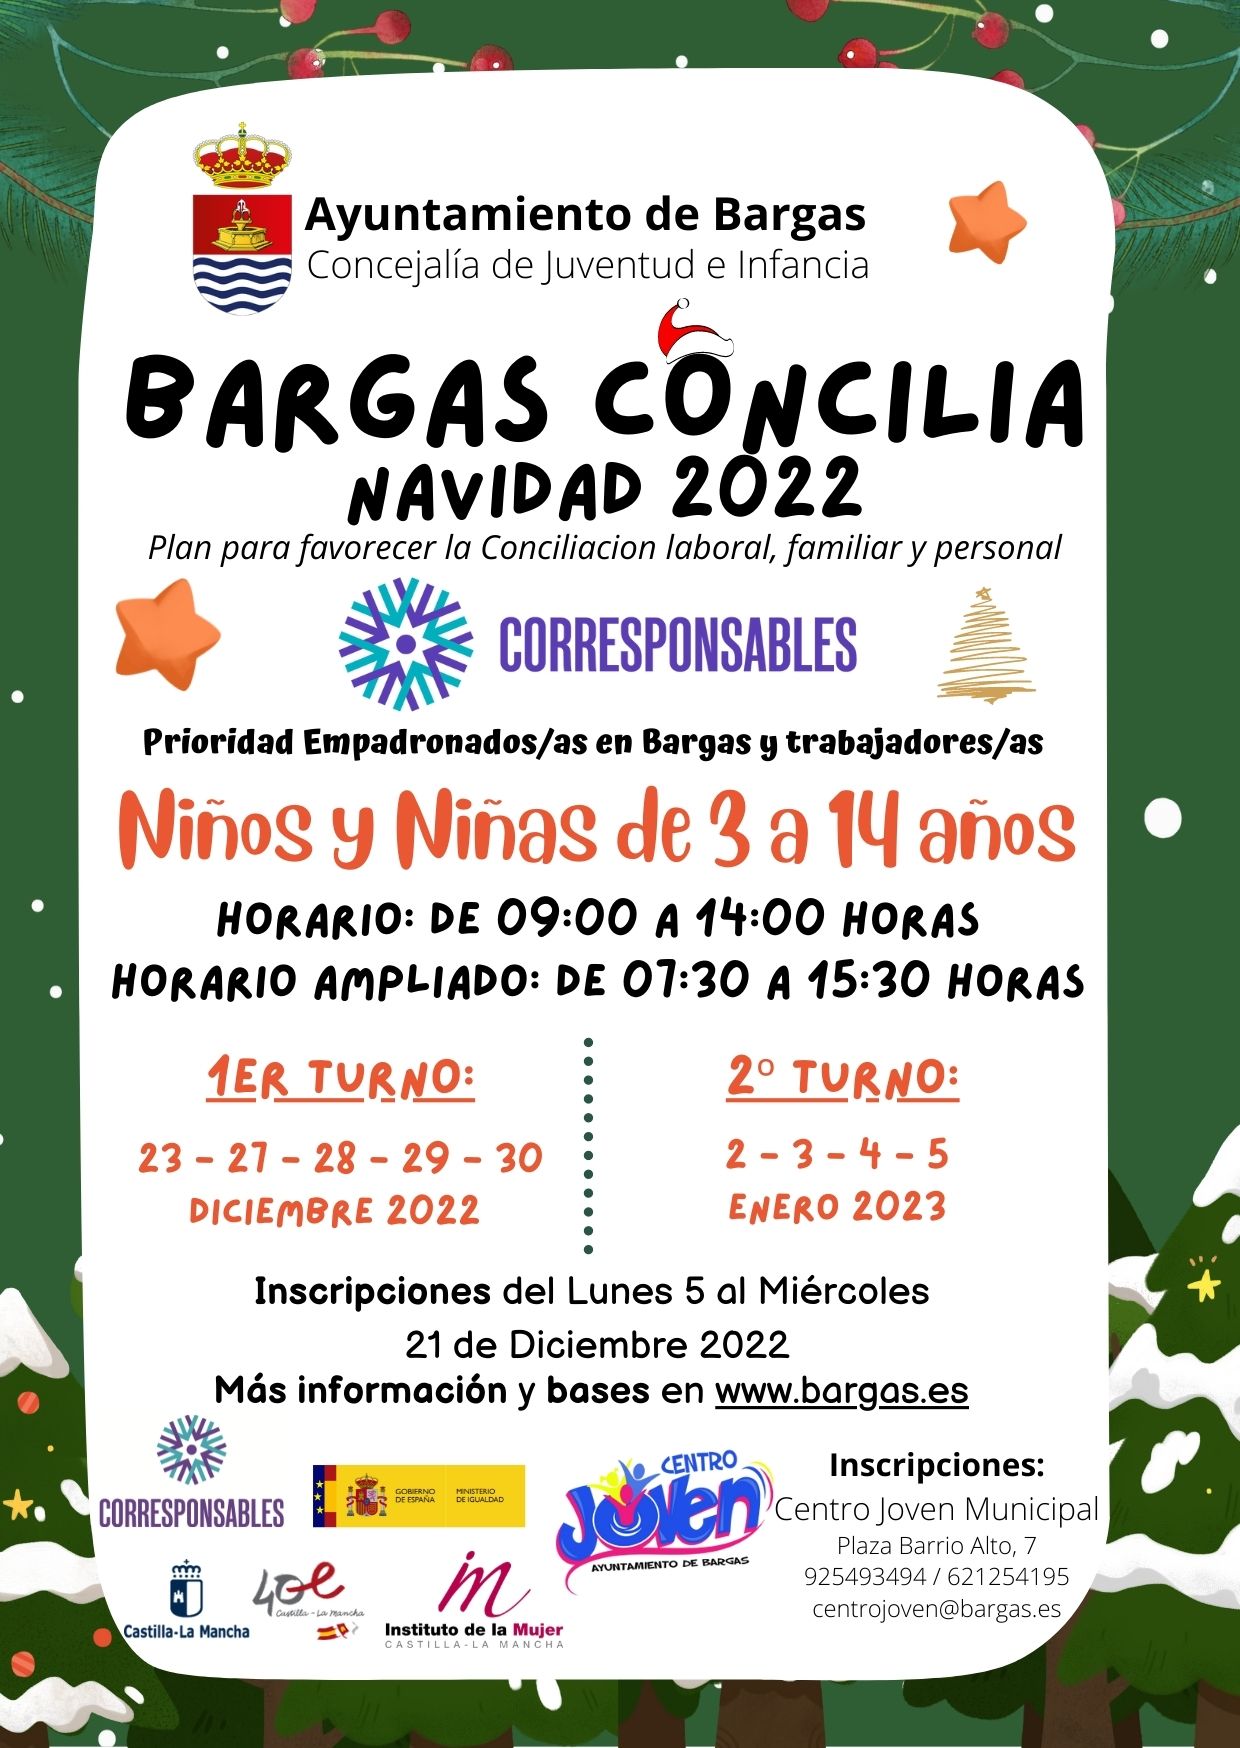 Bargas Concilia – Navidad 2022